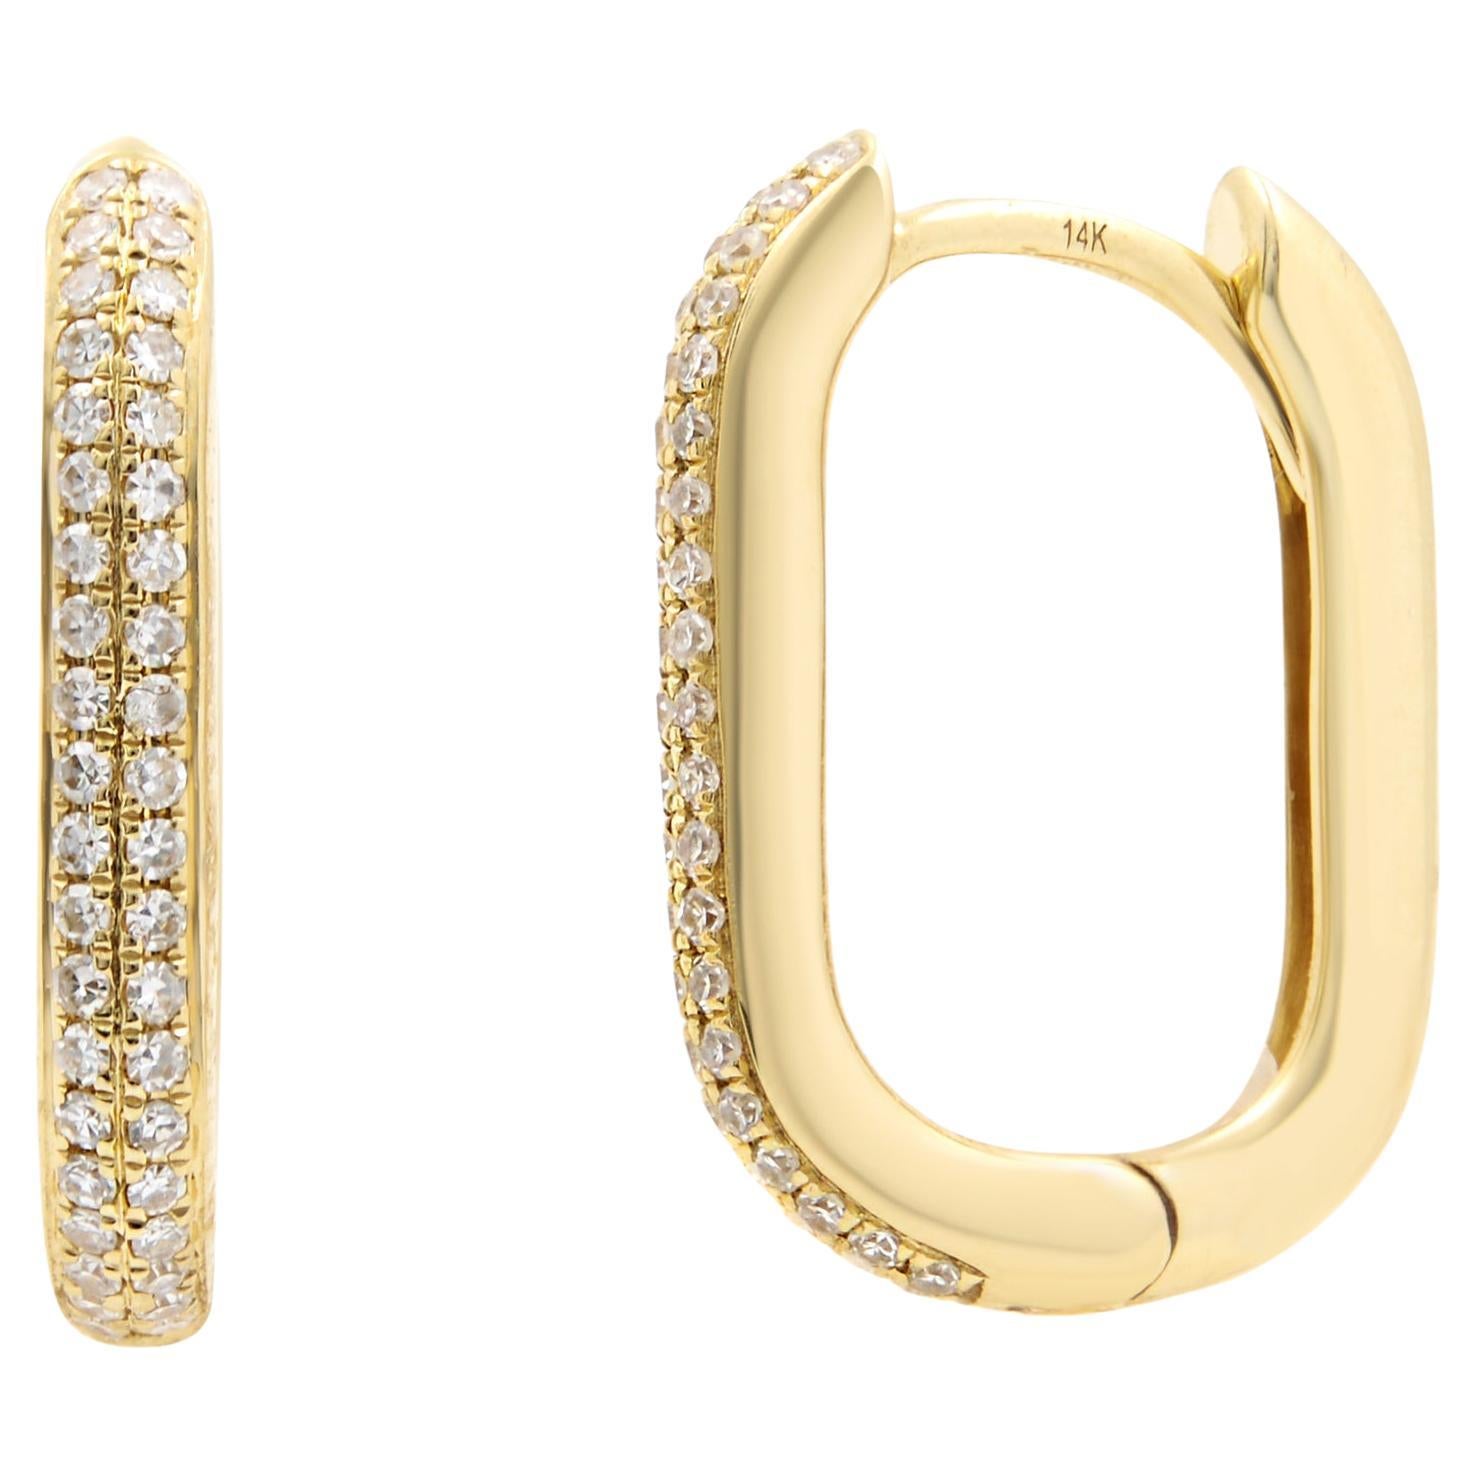 Rachel Koen Diamond Oblong Huggie Earrings 14K Yellow Gold 0.18Cttw For Sale